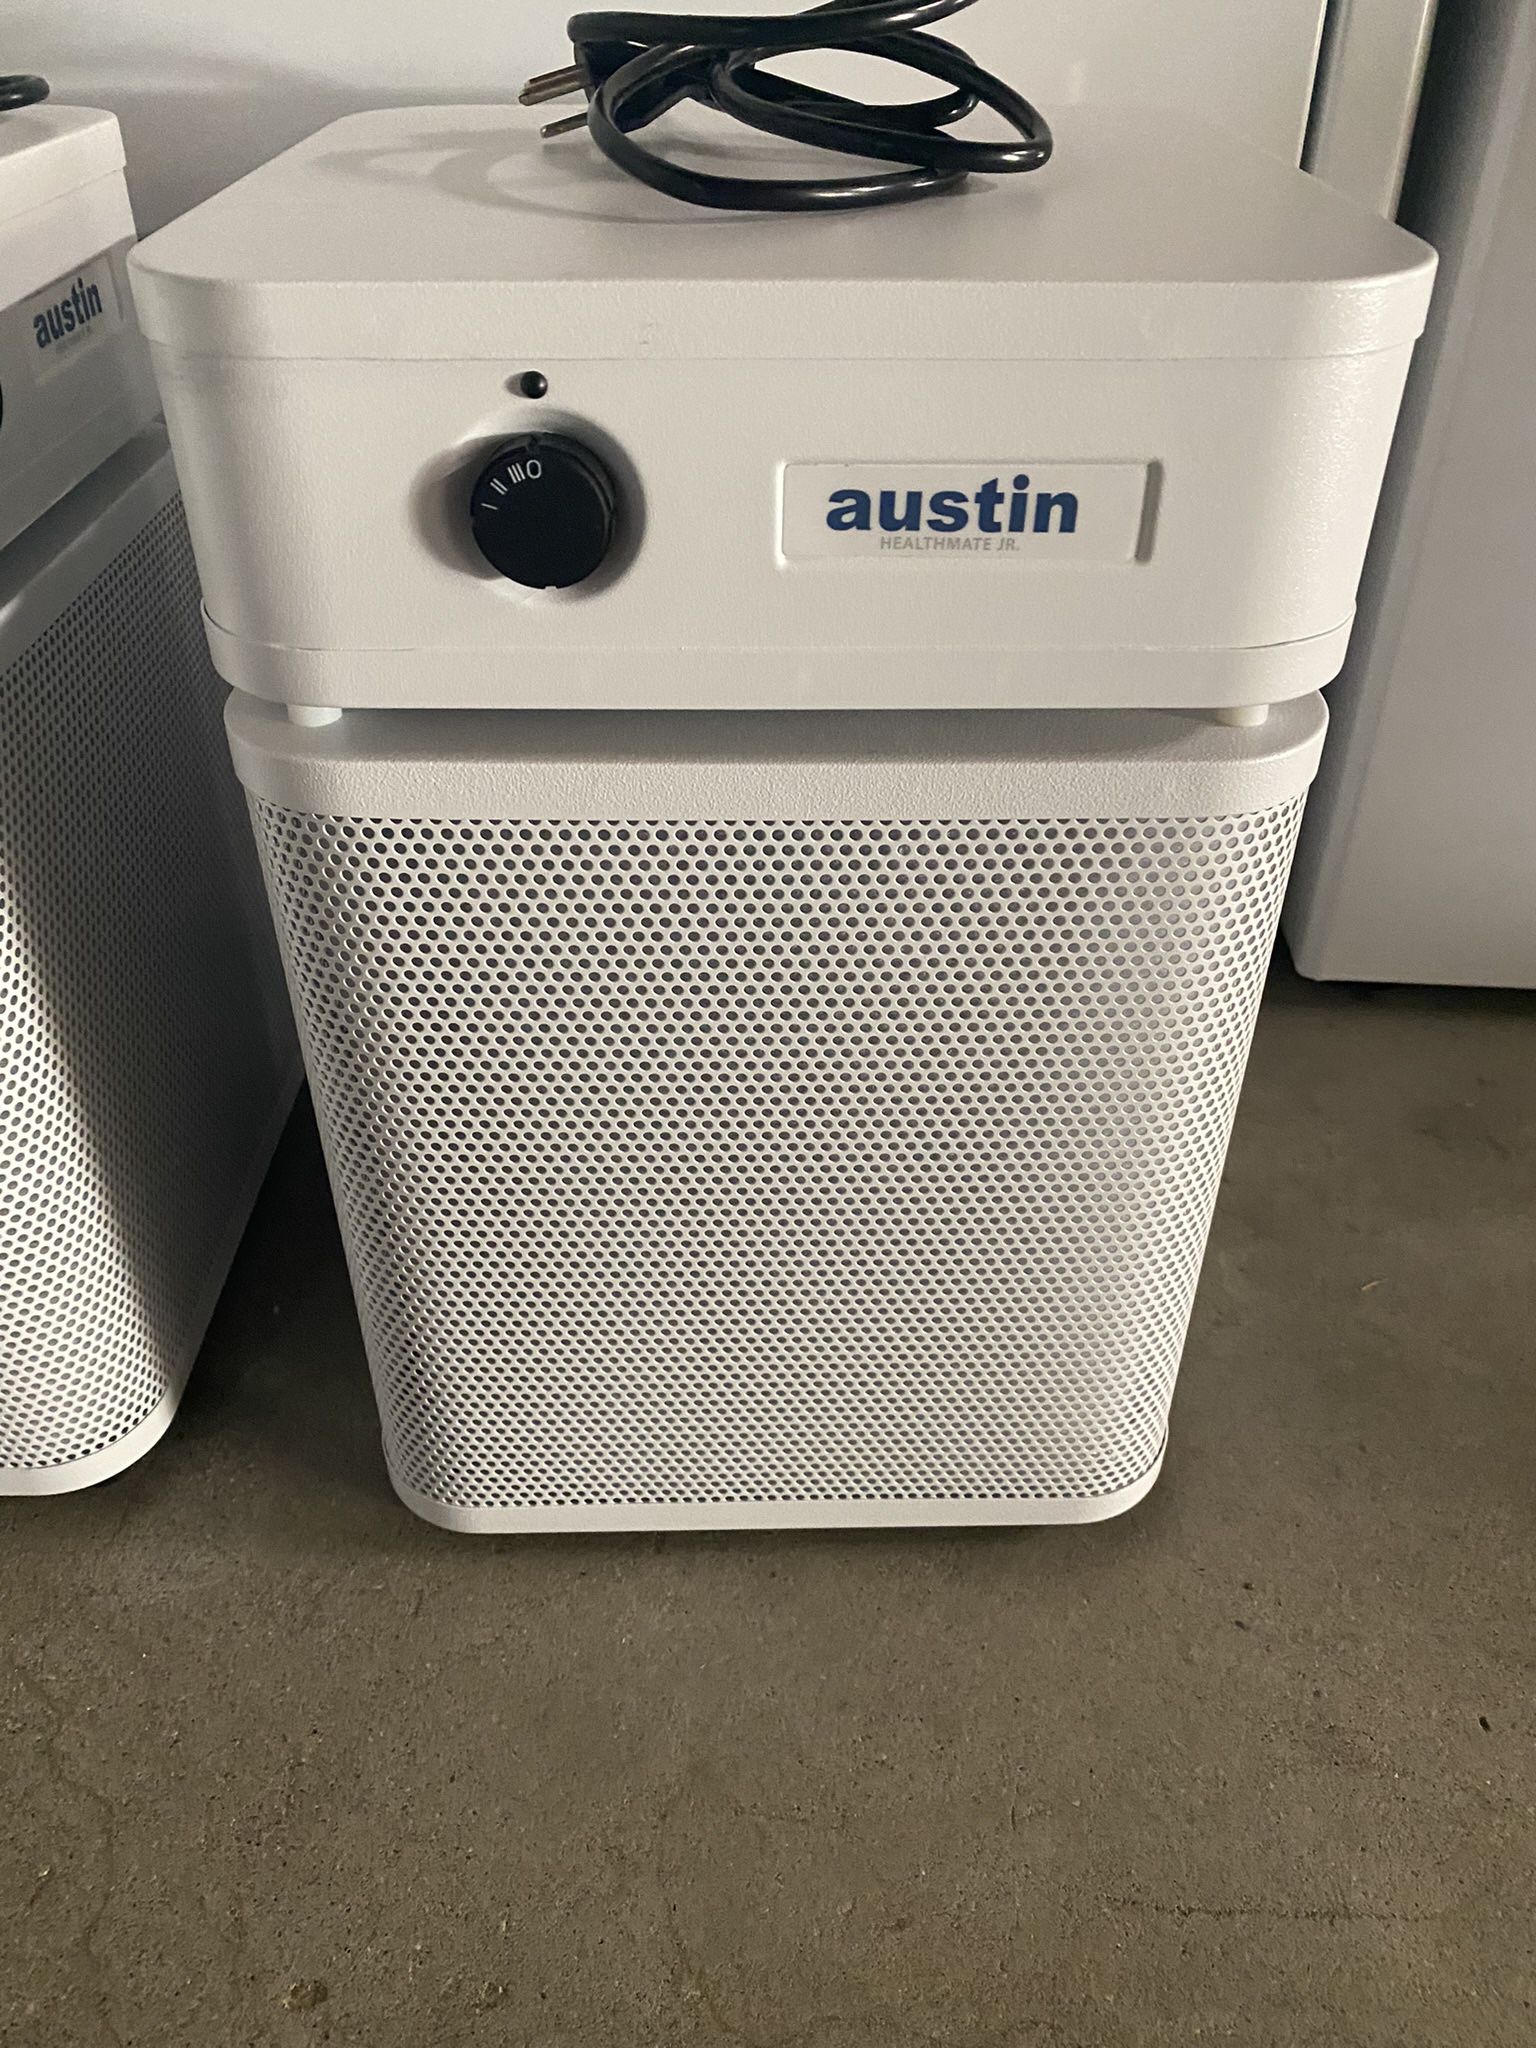 Austin Air Purifier / Filter